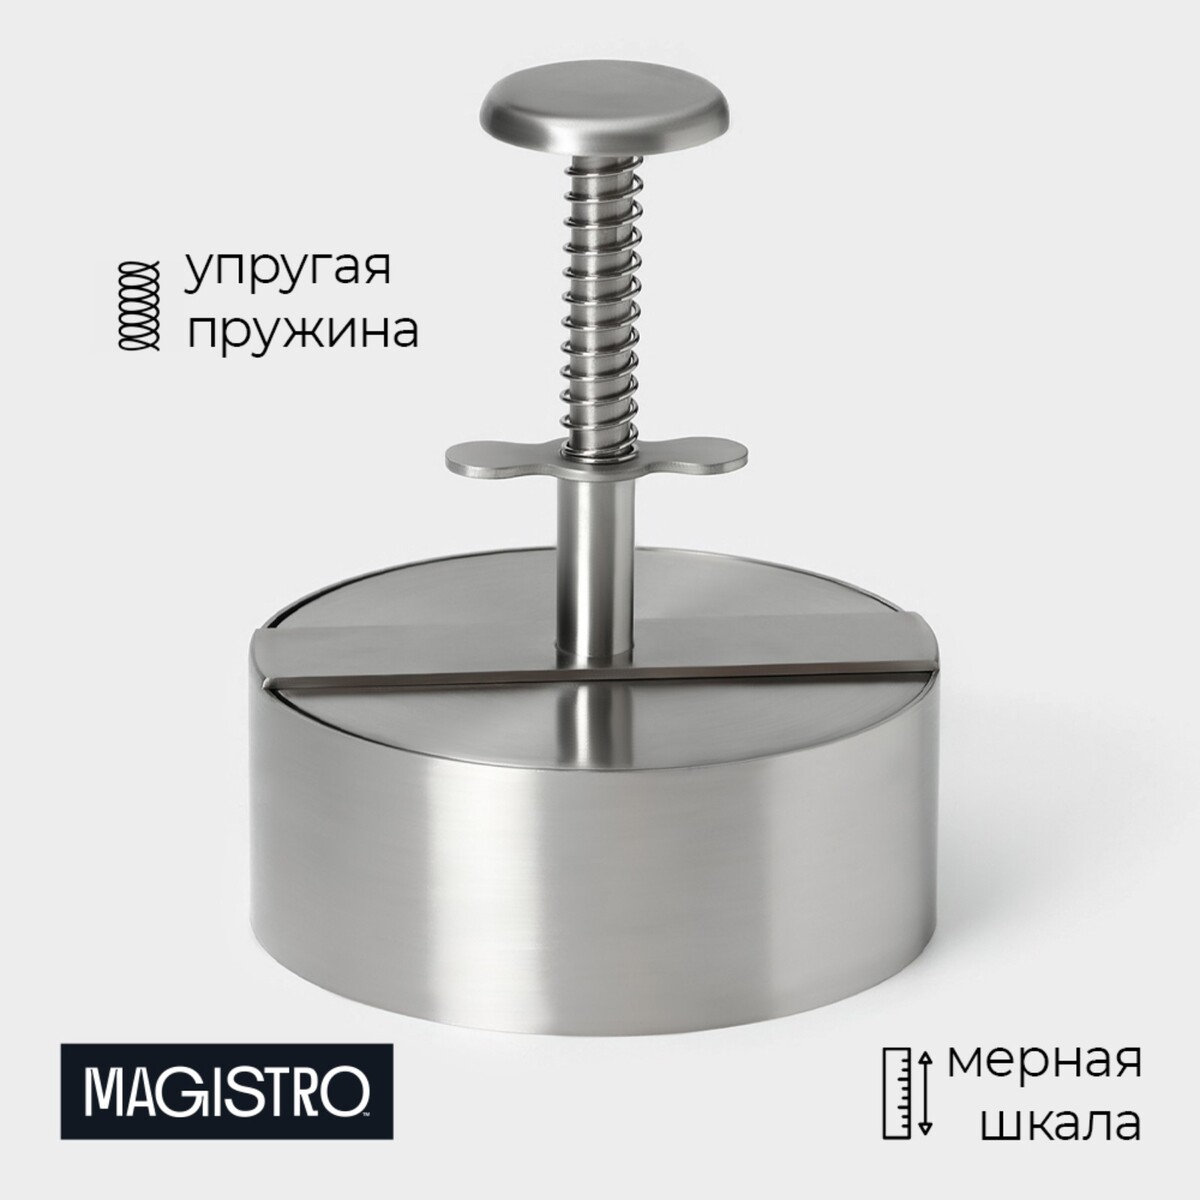 Пресс для бургеров magistro steel, 14×11.5 см, 304 сталь комбайн механический steel нержавеющая сталь